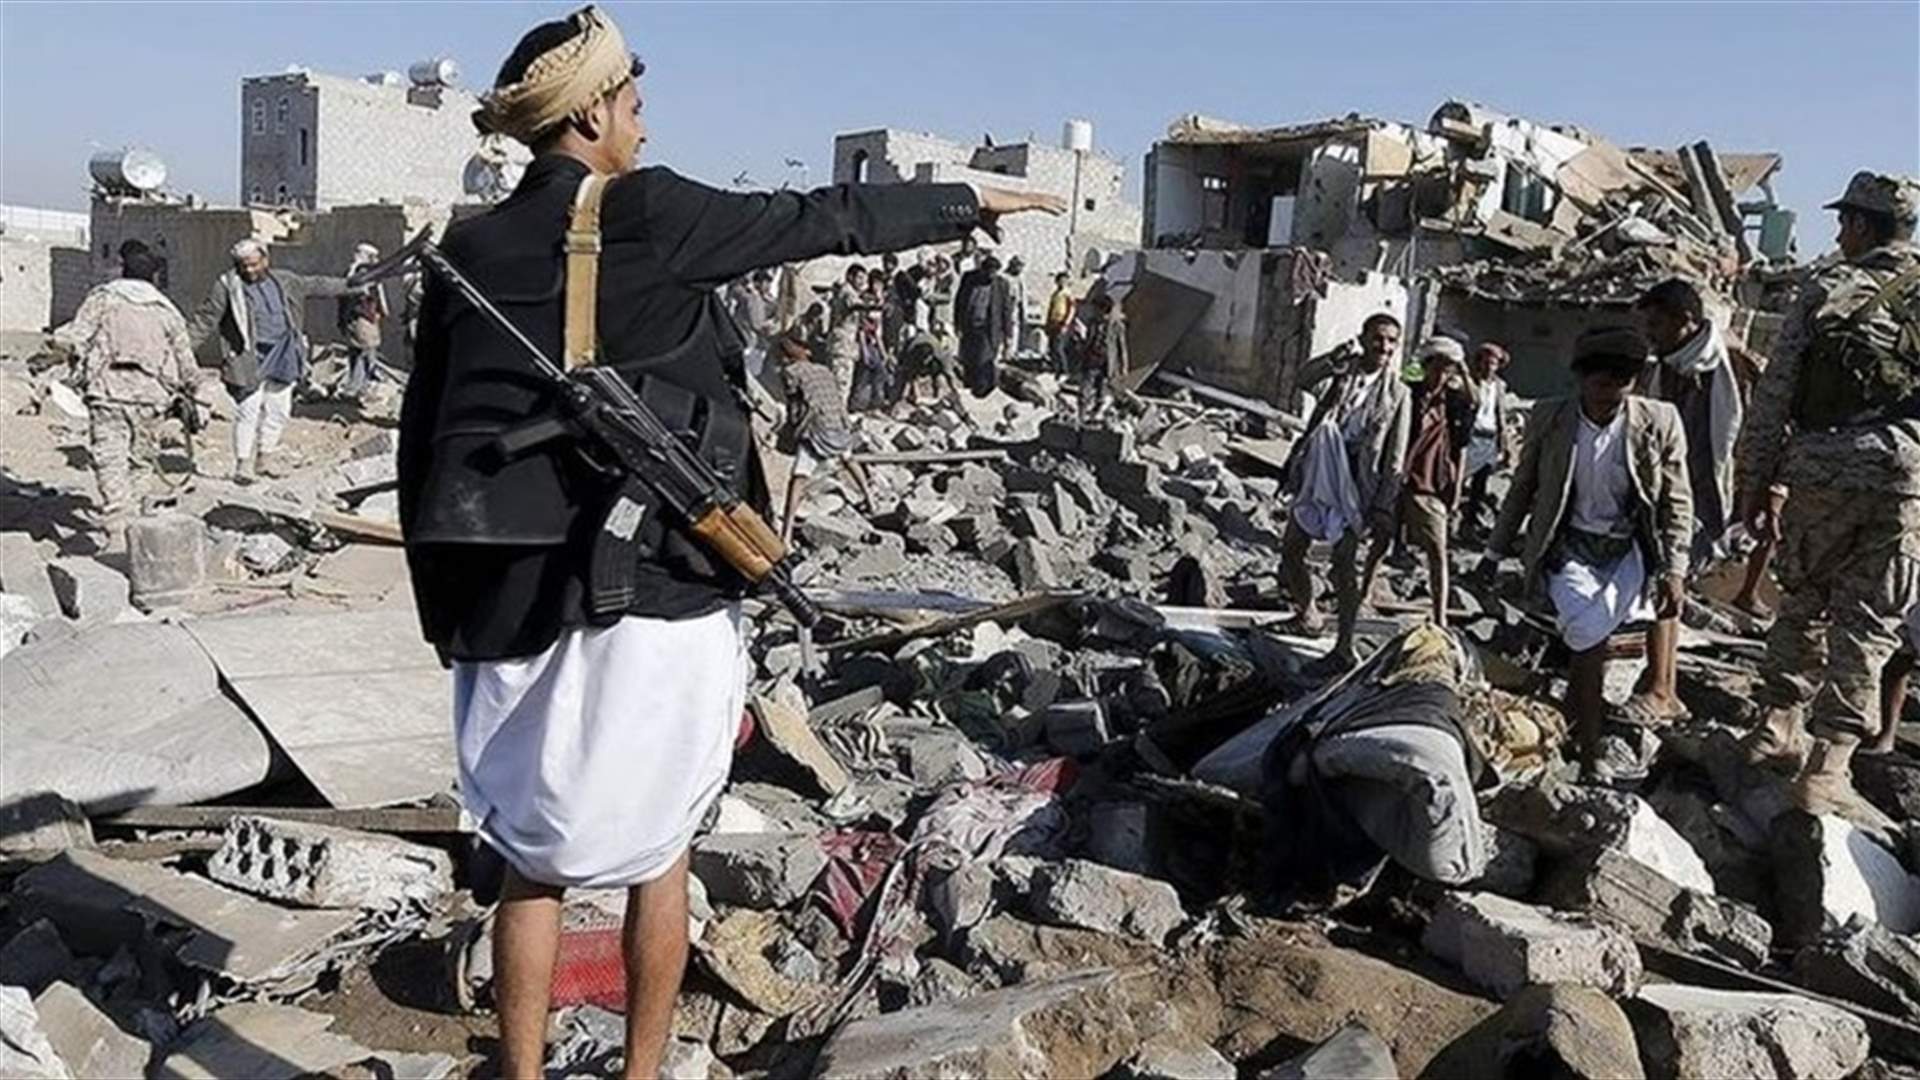 ارتفاع عدد قتلى حرب اليمن الى 10 آلاف